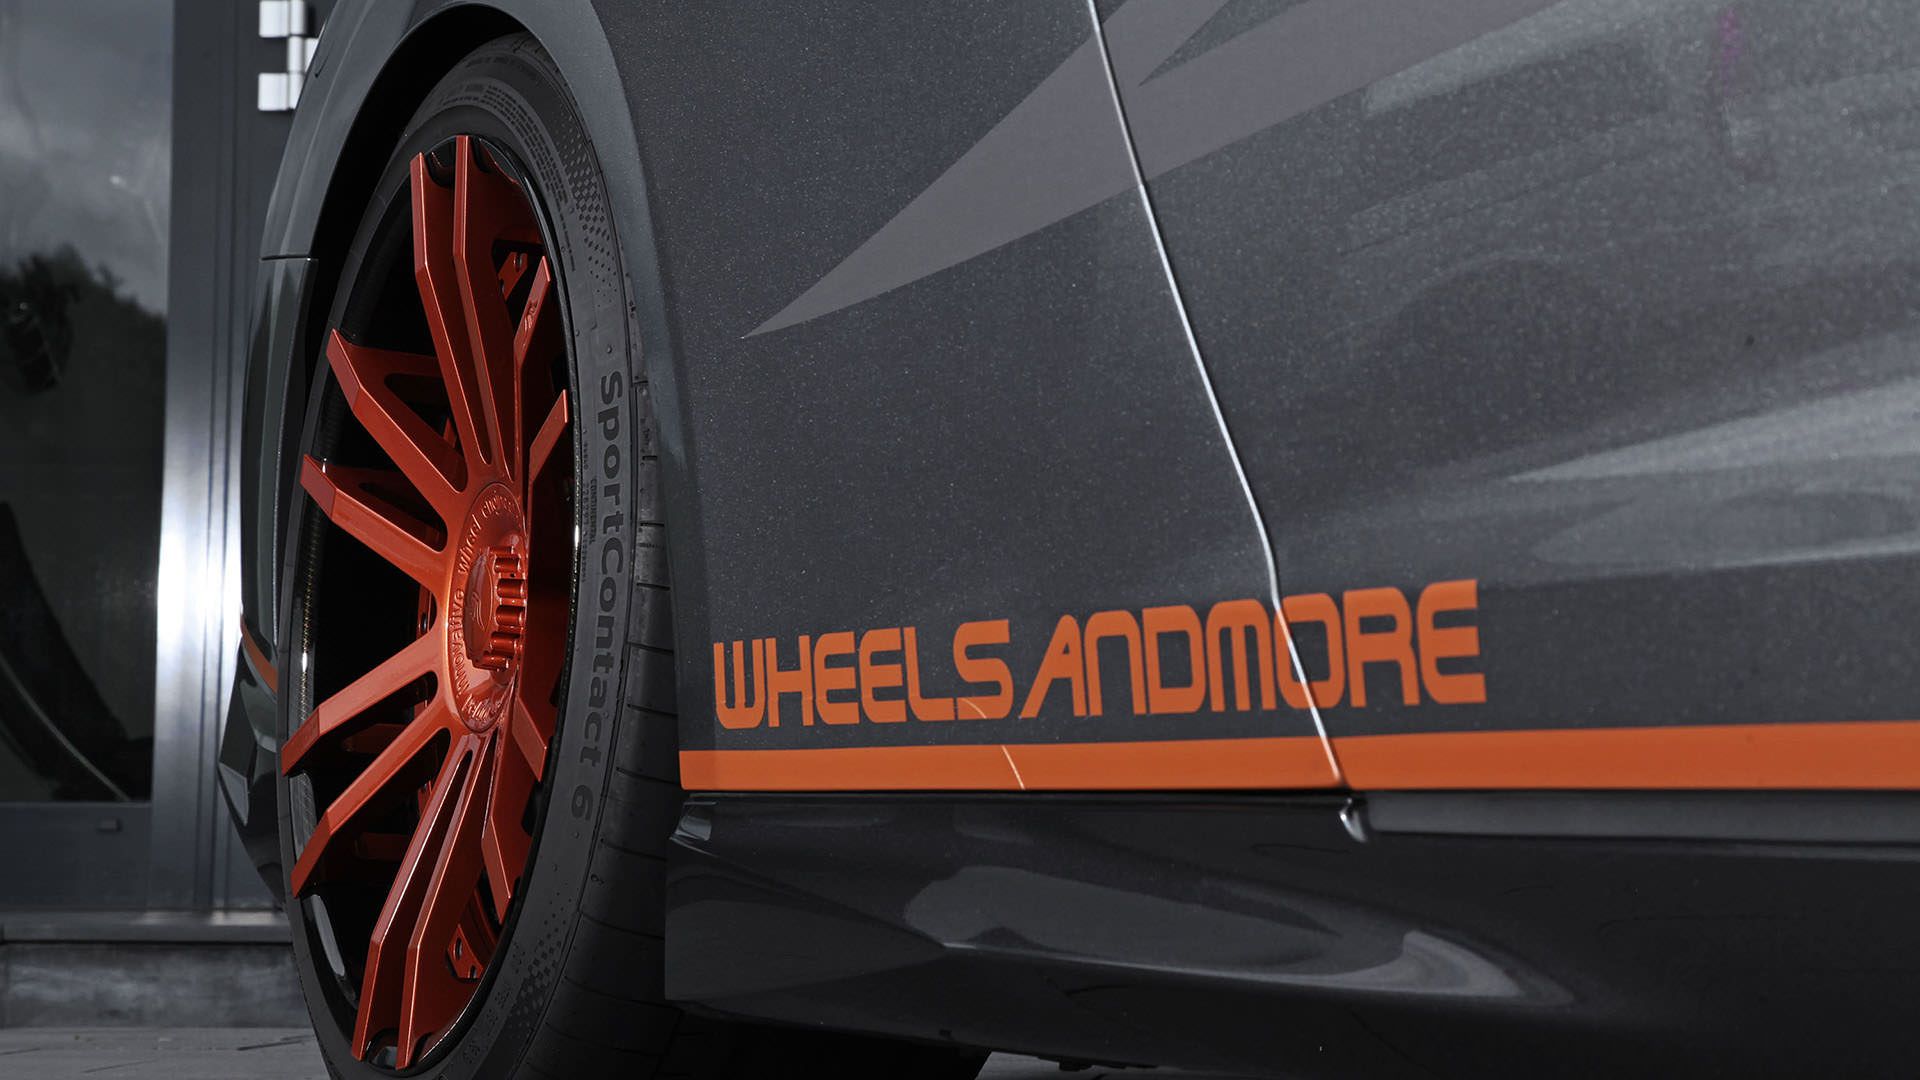 رکاب جانبی نیسان جی تی آر کرنک زیلا / Nissan GT-R تیونینگ ویلزاندمور / Nissan GT-R Tuning Project „CrankZilla“ by Wheelsandmore خاکستری 